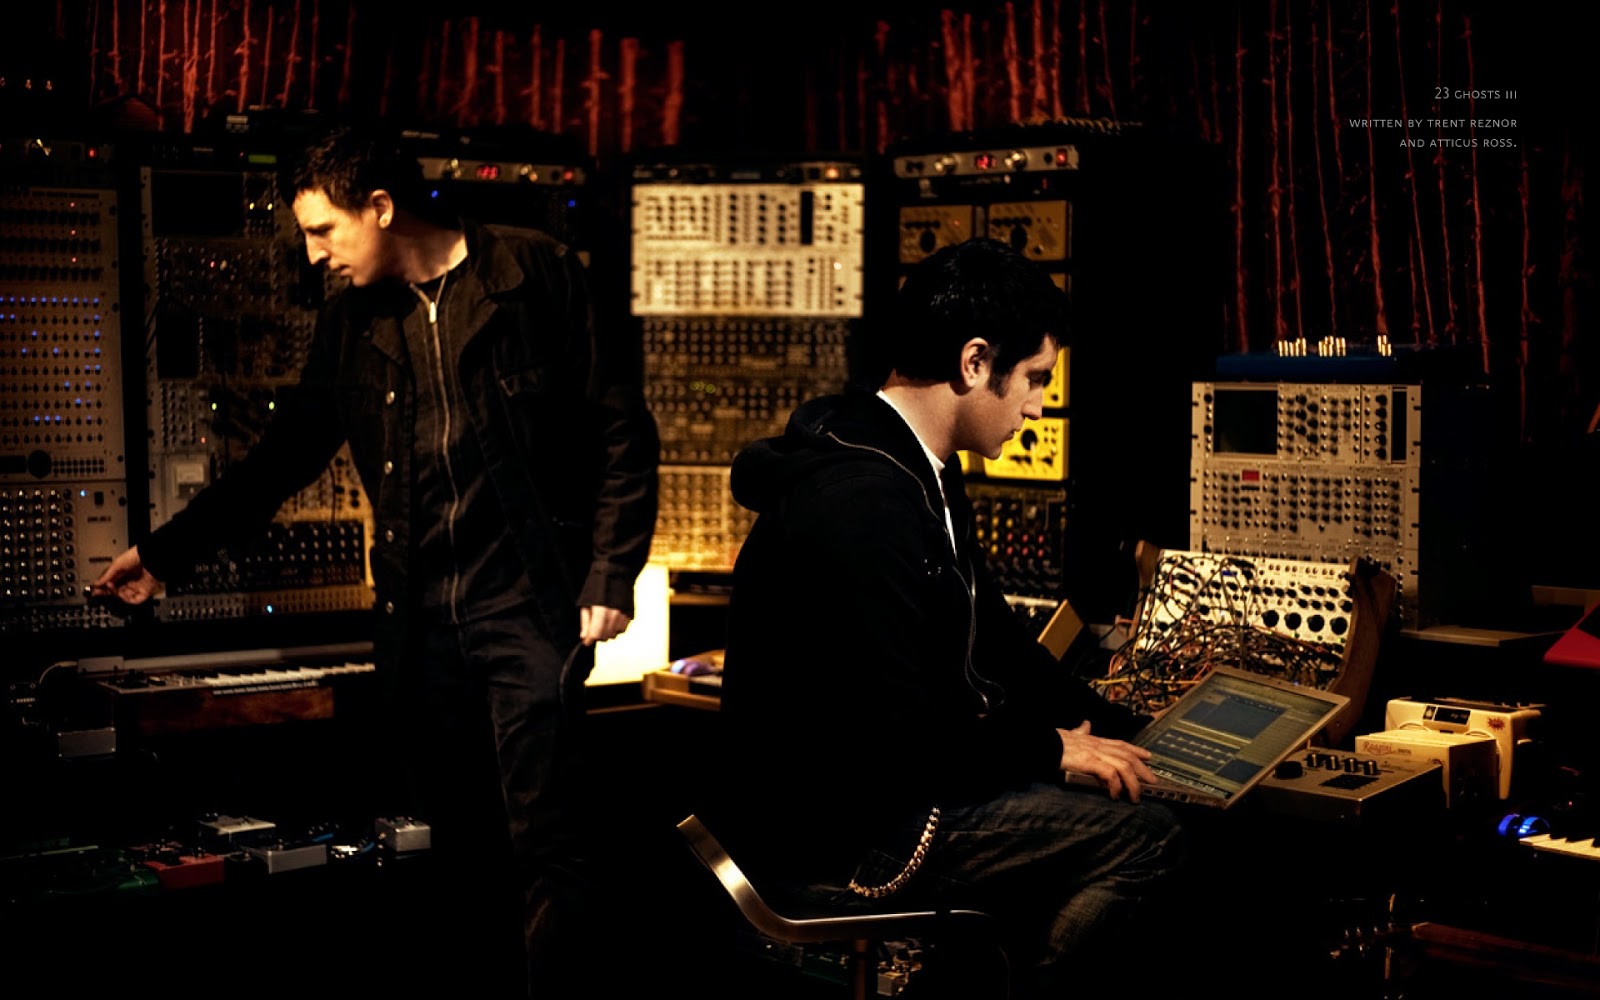 Fondos de Nine Inch Nails, más de 80 wallpapers | Fondos de ...